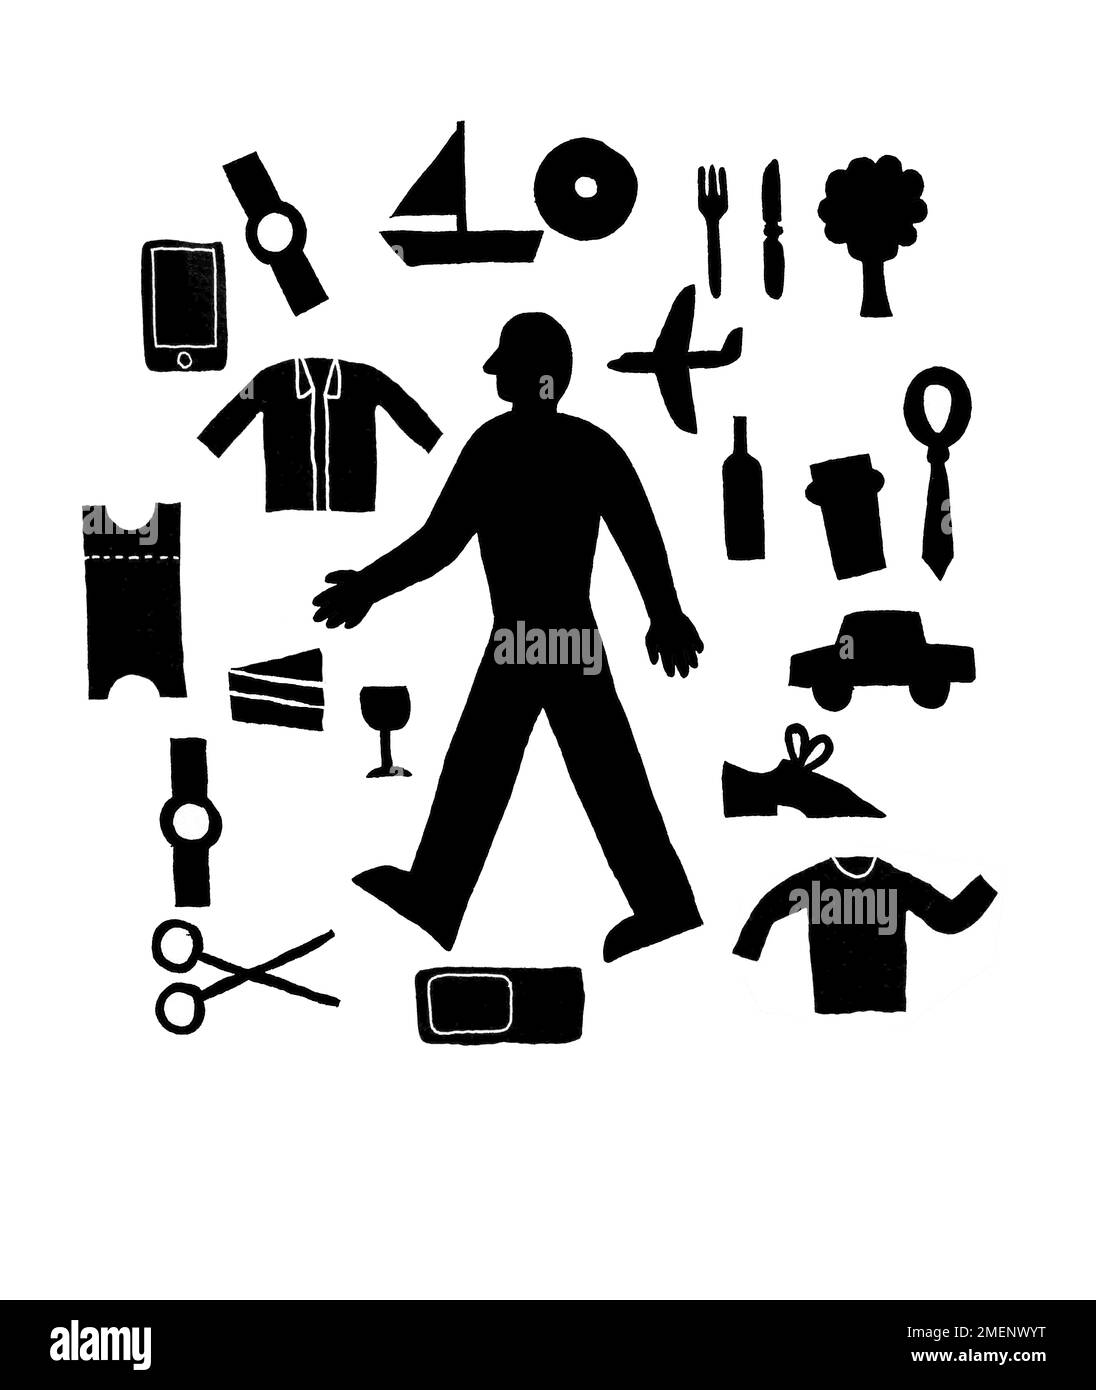 Schwarz-Weiß-Darstellung des Menschen umgeben von einer Vielzahl von alltäglichen Gegenständen und Anliegen Stockfoto